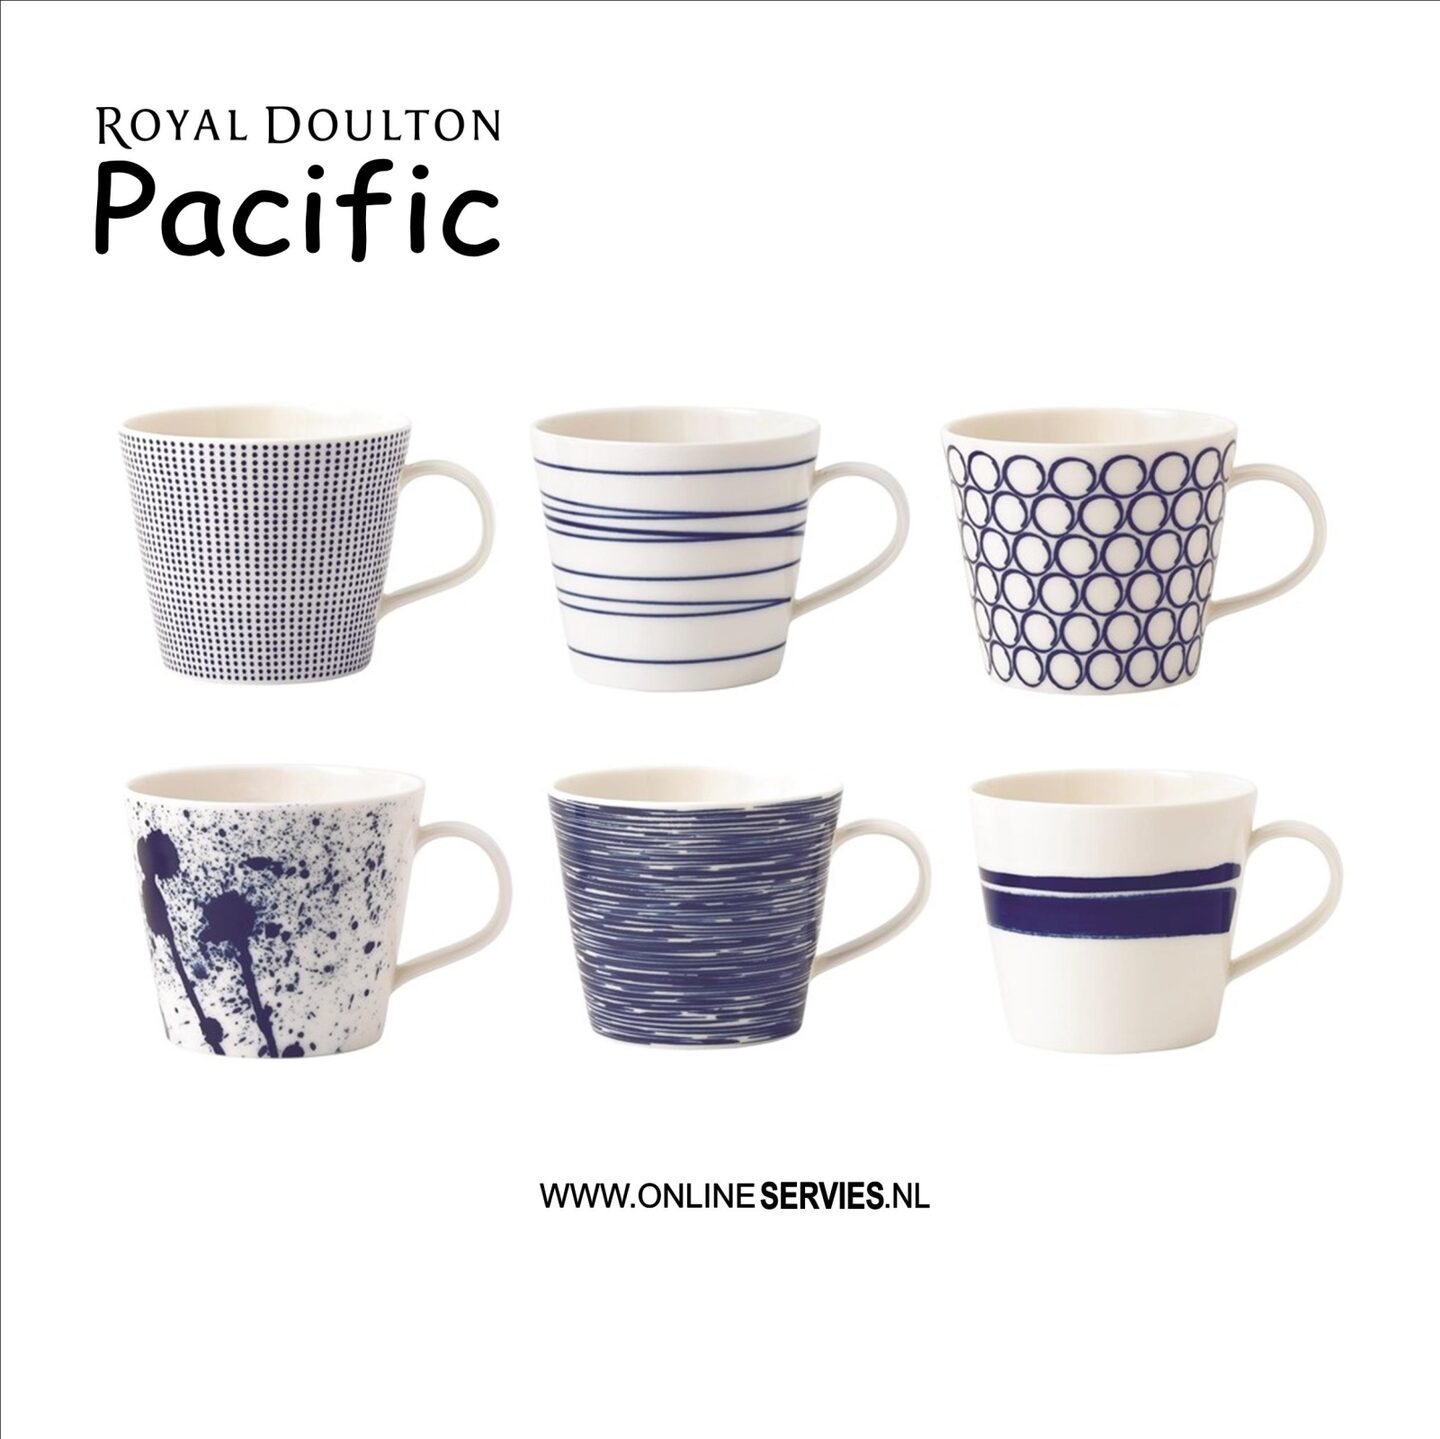 Omgaan met Emulatie Zilver Royal Doulton Pacific bekers groot 350 ml - Assorti 6 stuks (online) kopen?  | OnlineServies.nl